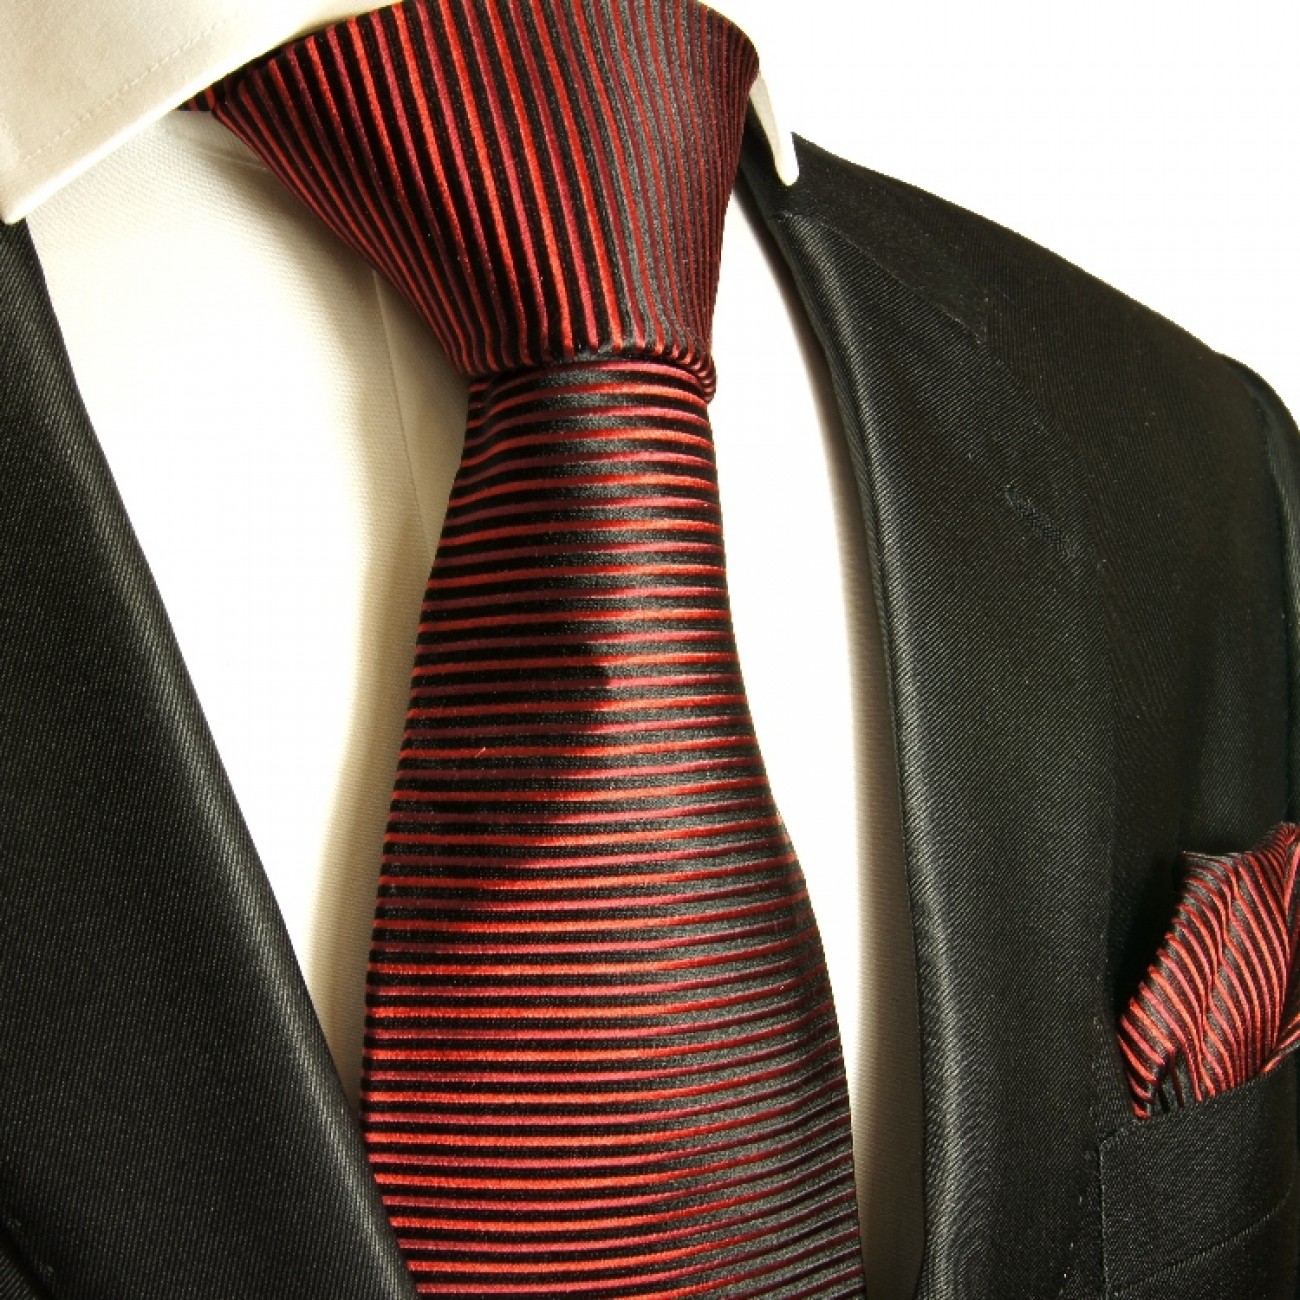 Krawatte rot gestreift Seidenkrawatte - Seide - Krawatte mit Einstecktuch und Manschettenknöpfe